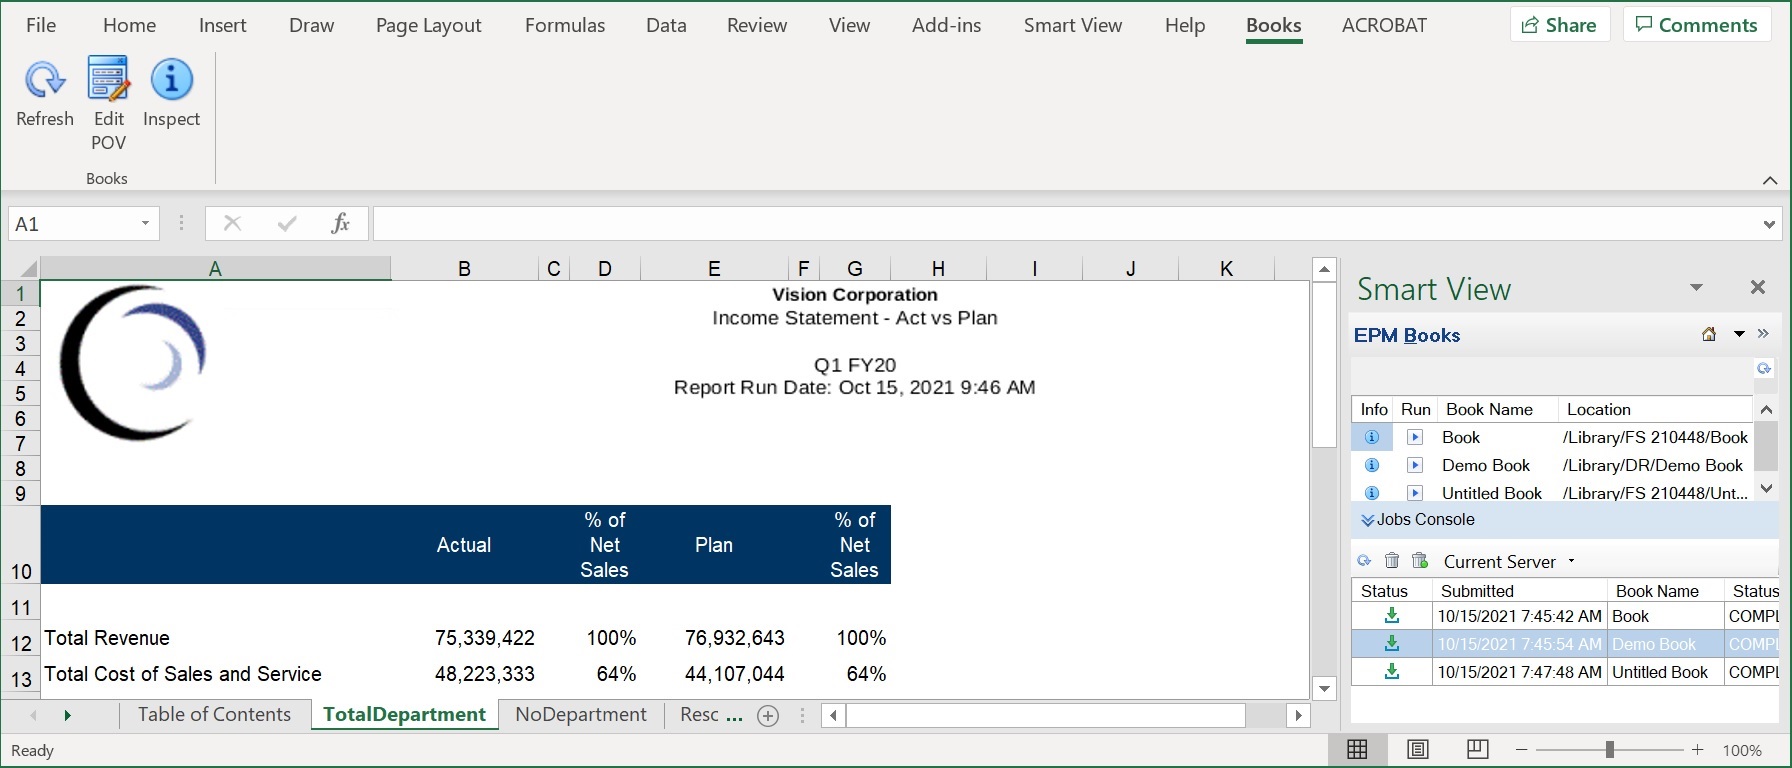 Ruban Liasses et exemple d'onglets de page de table des matières et de feuilles de calcul dans une liasse téléchargée dans Excel